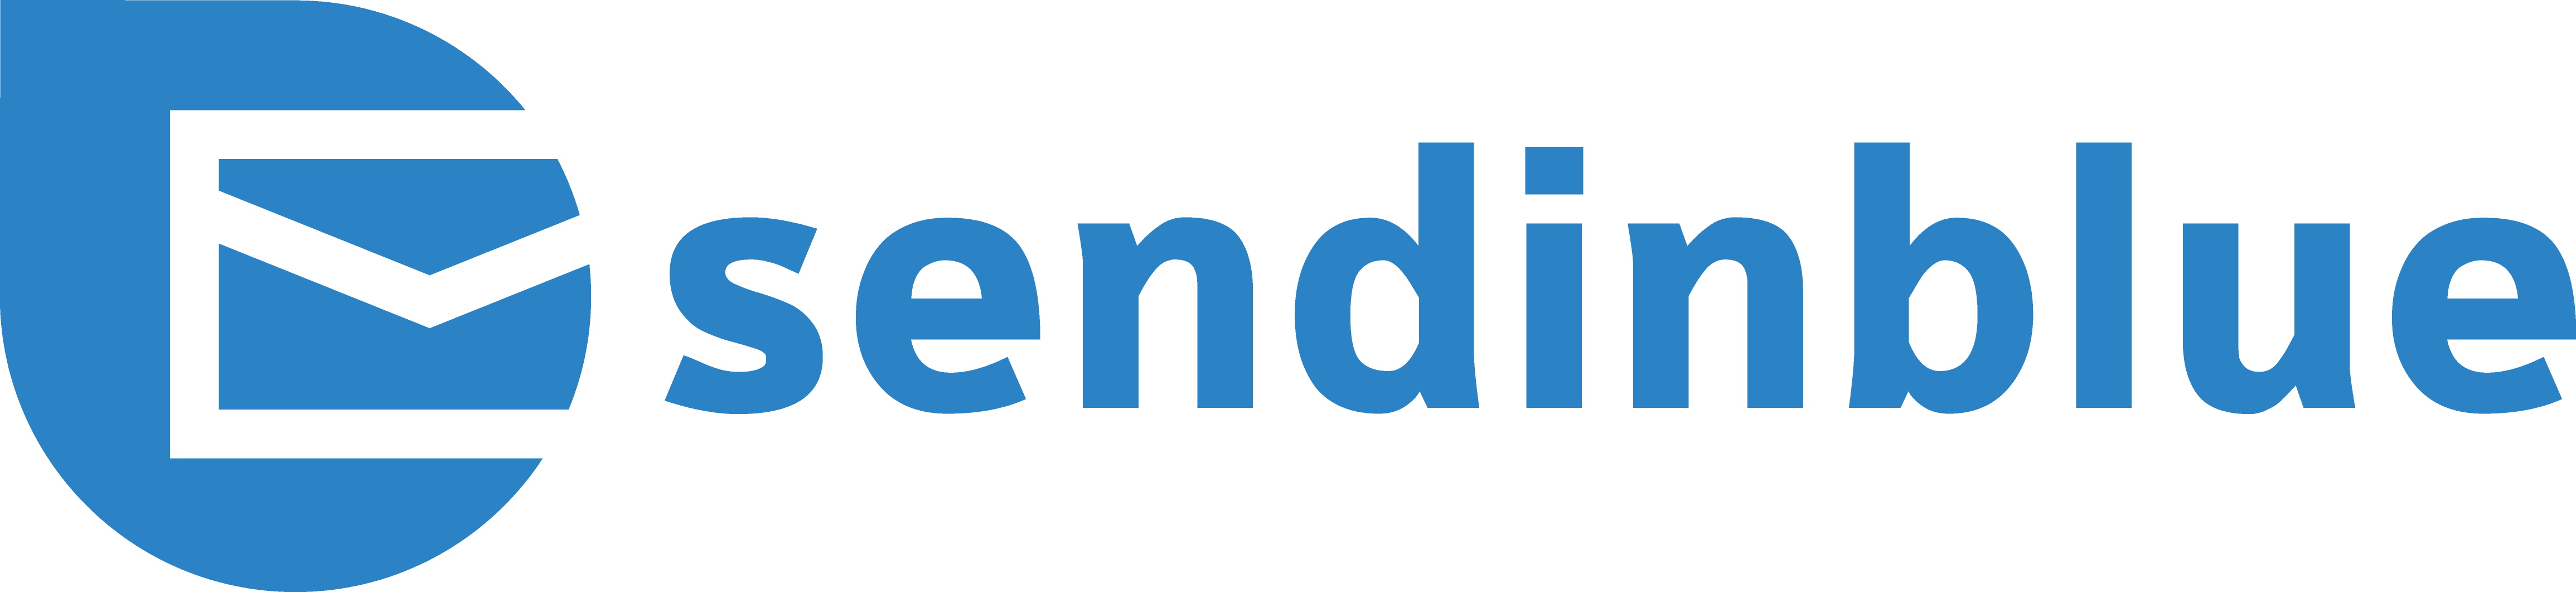 SendinBlue logo 